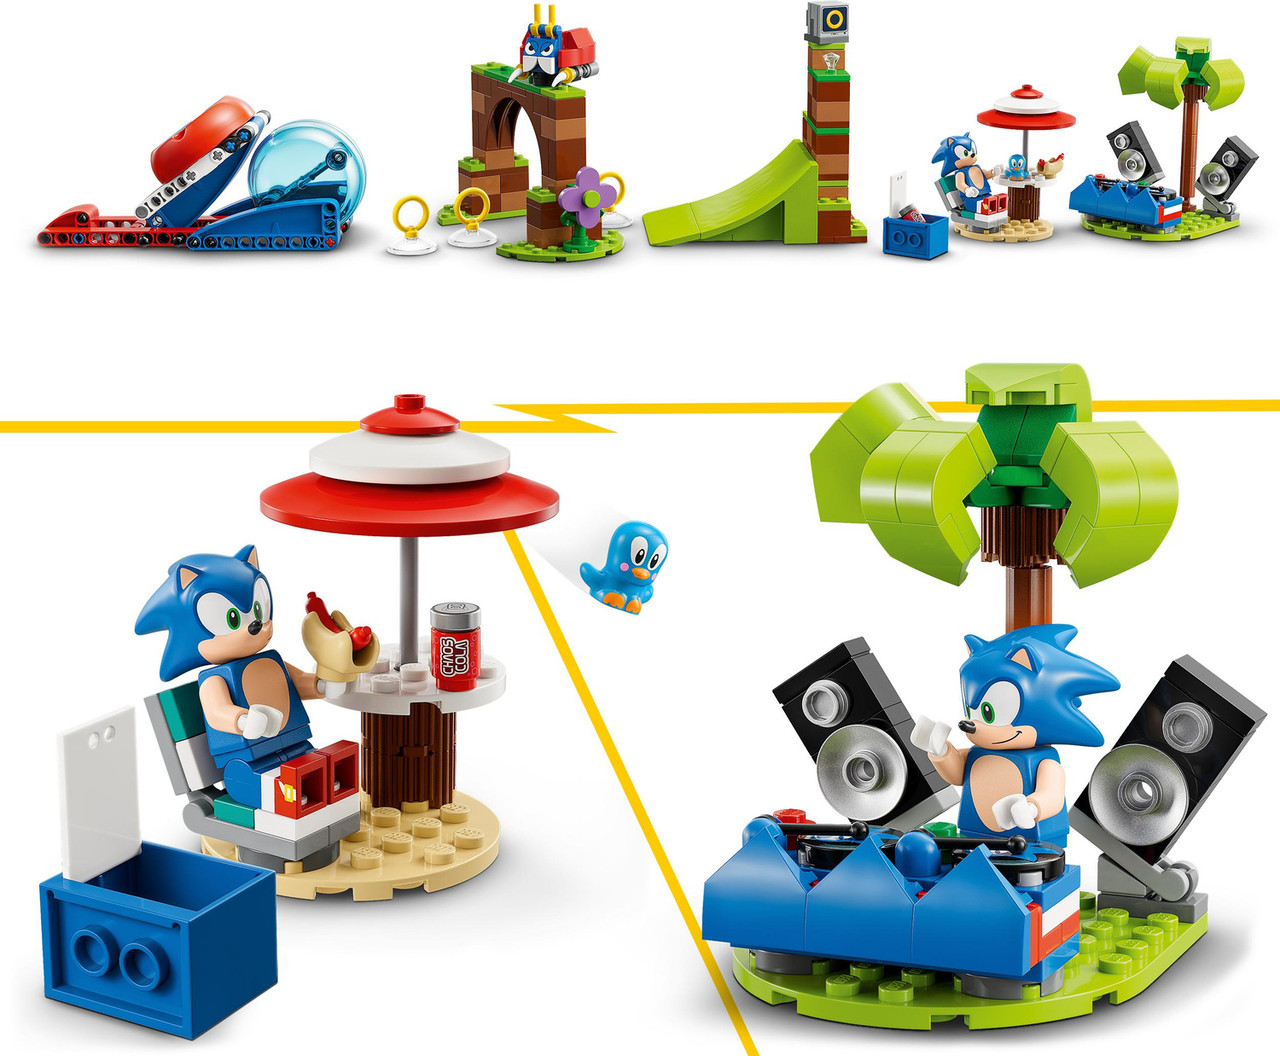 SONIC LEGO Build Spins the Hedgehog At Super Speeds - Nerdist